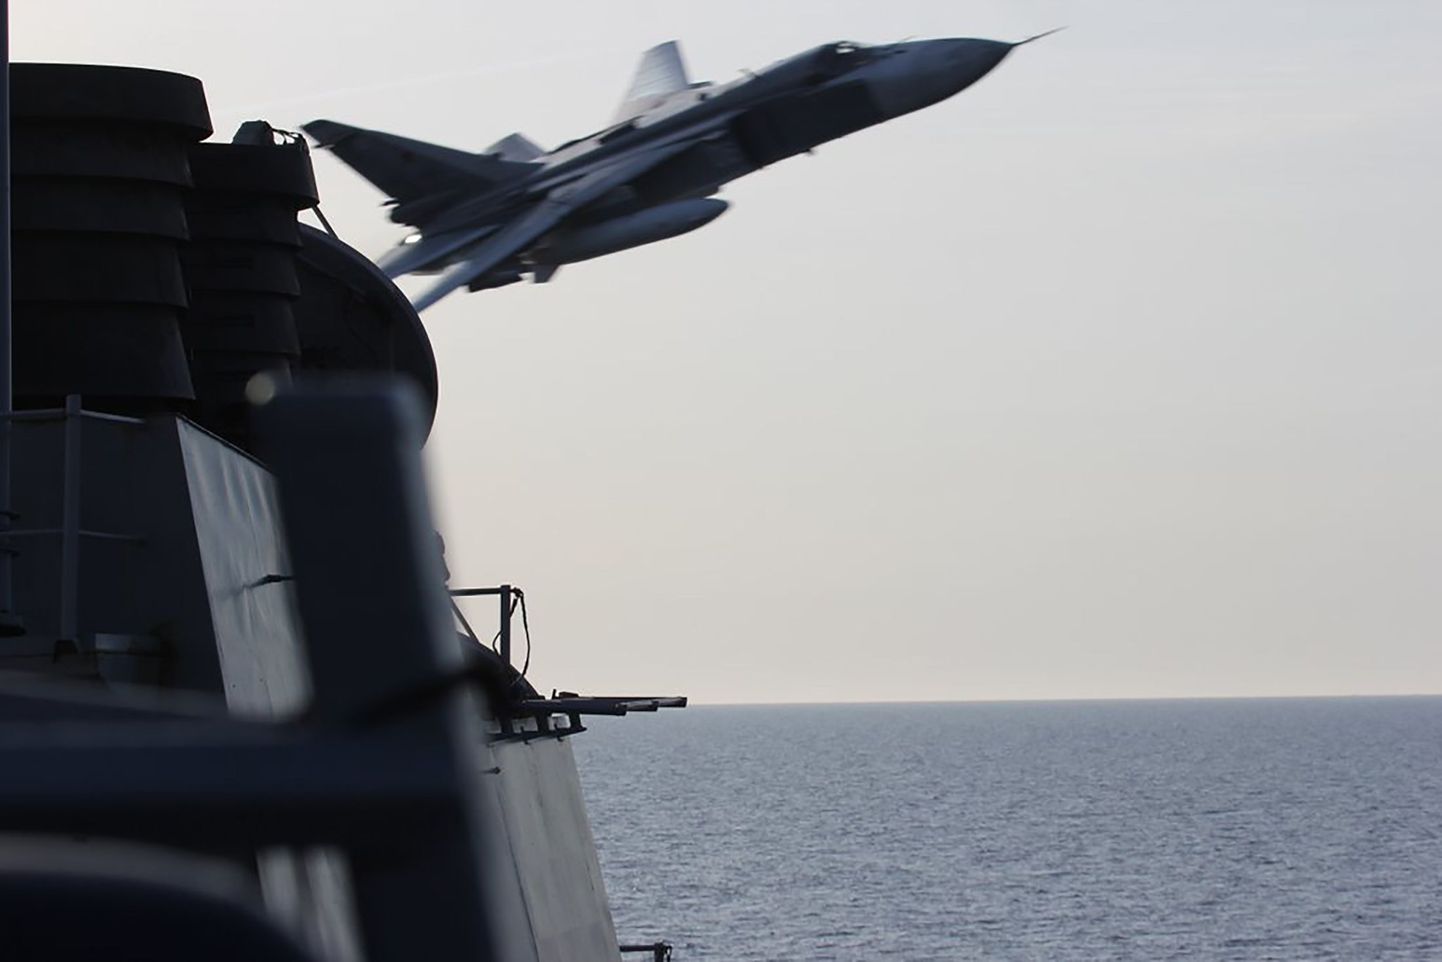 Российский Су-24 пролетает на малой высоте вблизи от эсминца "Дональд Кук".